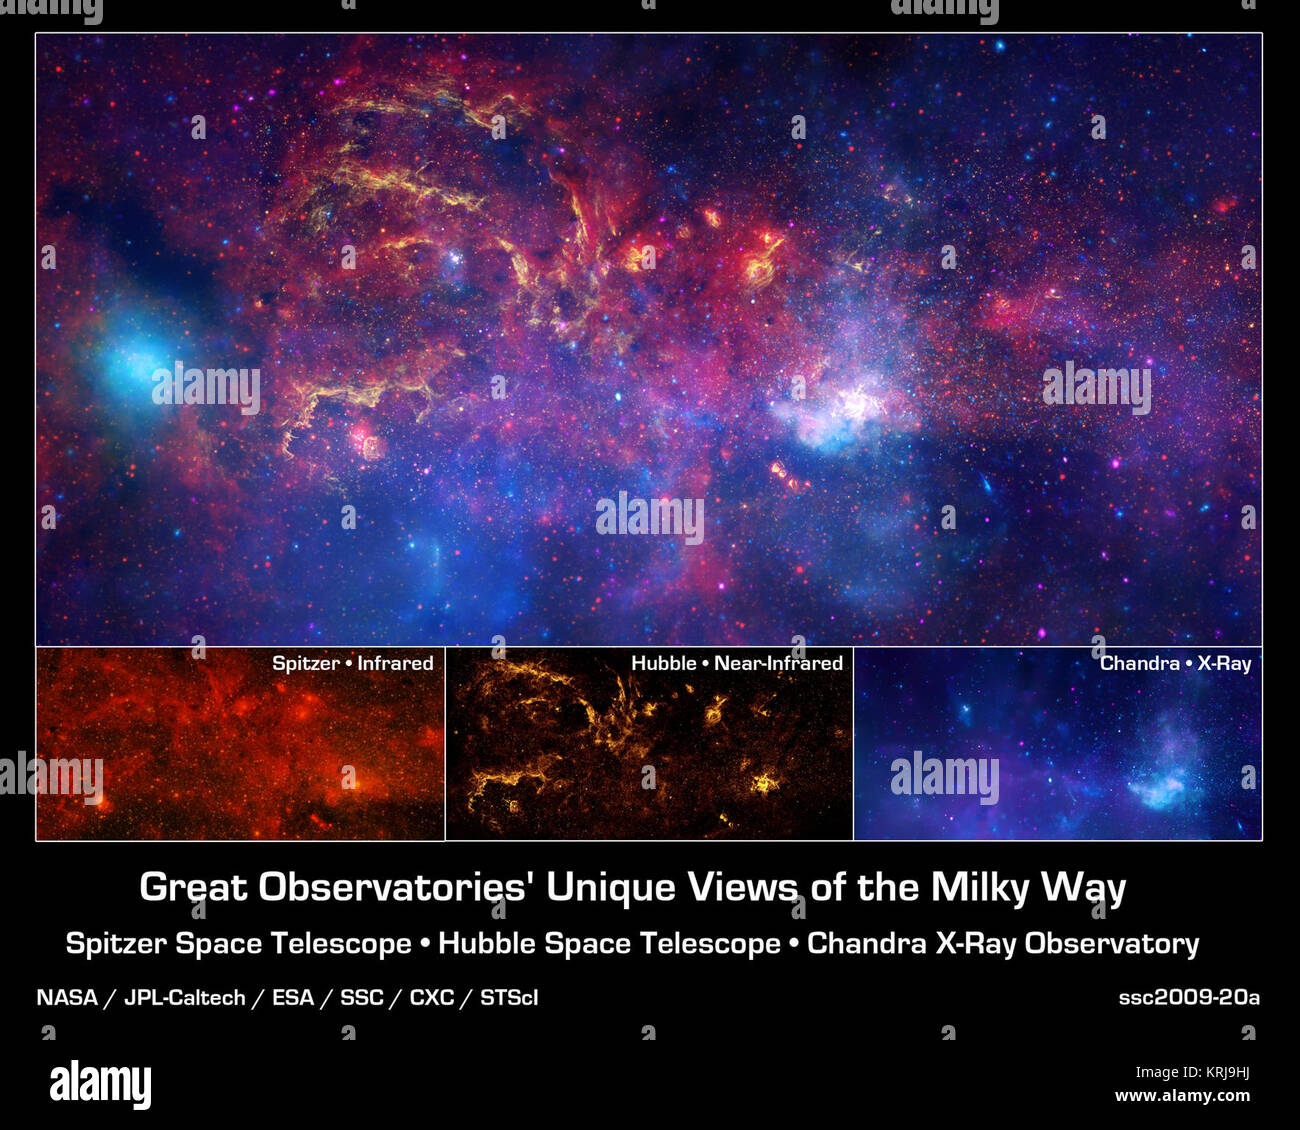 Pour célébrer l'Année internationale de l'Astronomie 2009, la NASA's grands observatoires -- le télescope spatial Hubble, le télescope spatial Spitzer, et l'Observatoire de rayons X Chandra -- ont produit un trio d'images de la région centrale de notre galaxie. Chaque image montre la vue du télescope d'onde différente de la région du centre galactique, illustrant l'Observatoire effectue chaque scientifique unique. - En bas à gauche de la lumière infrarouge Spitzer observations fournissent une analyse détaillée et une vue spectaculaire de la région centre galactique. Le noyau de notre galaxie tourbillonnante des centaines de ports Banque D'Images